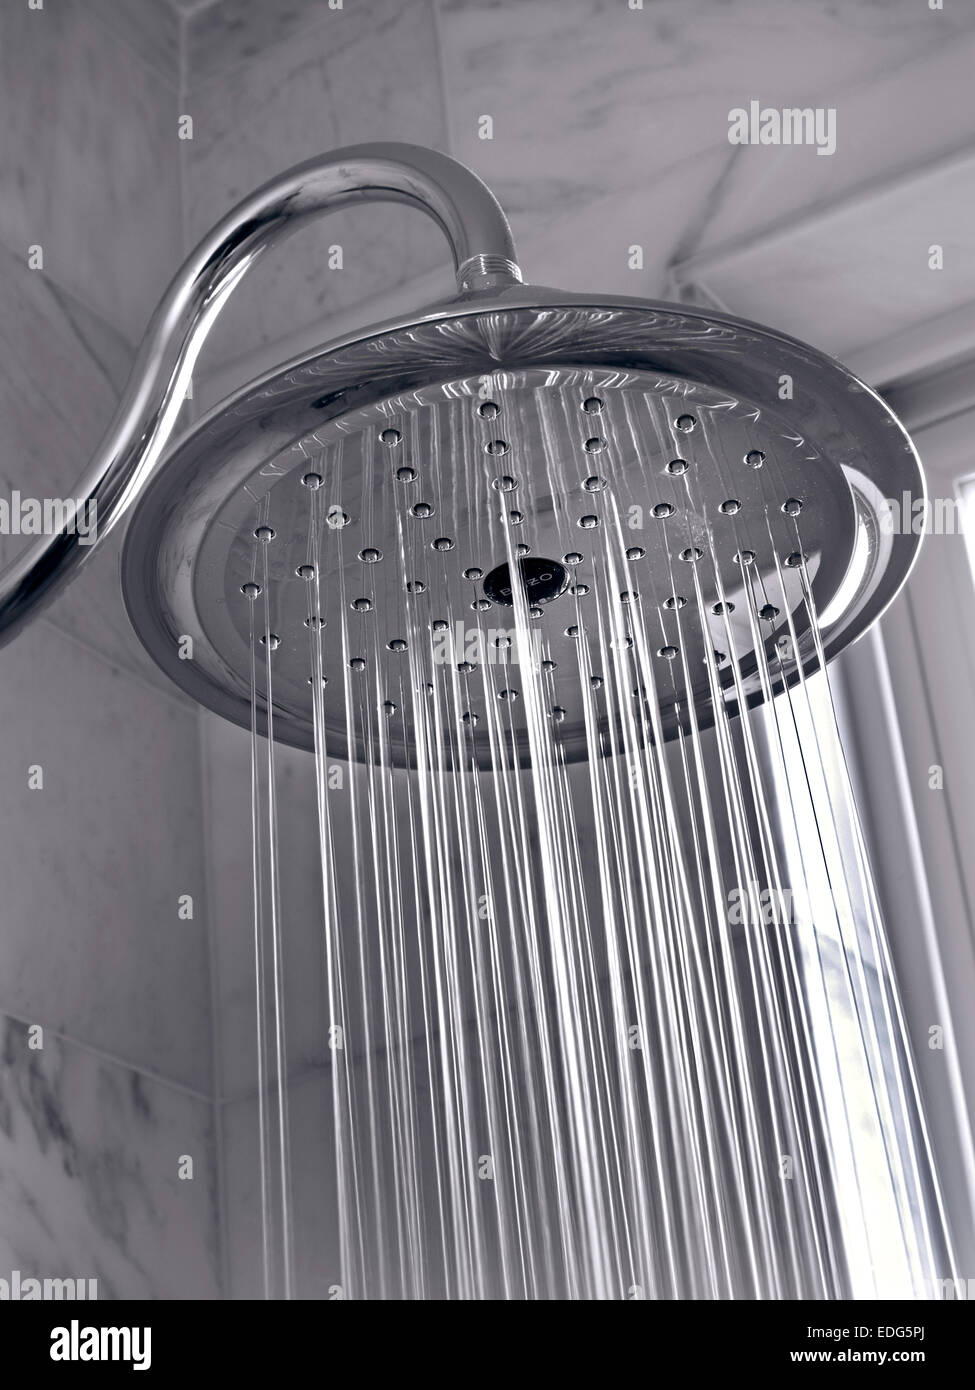 Gran cabezal de ducha tipo lluvia que libera gotas de agua.